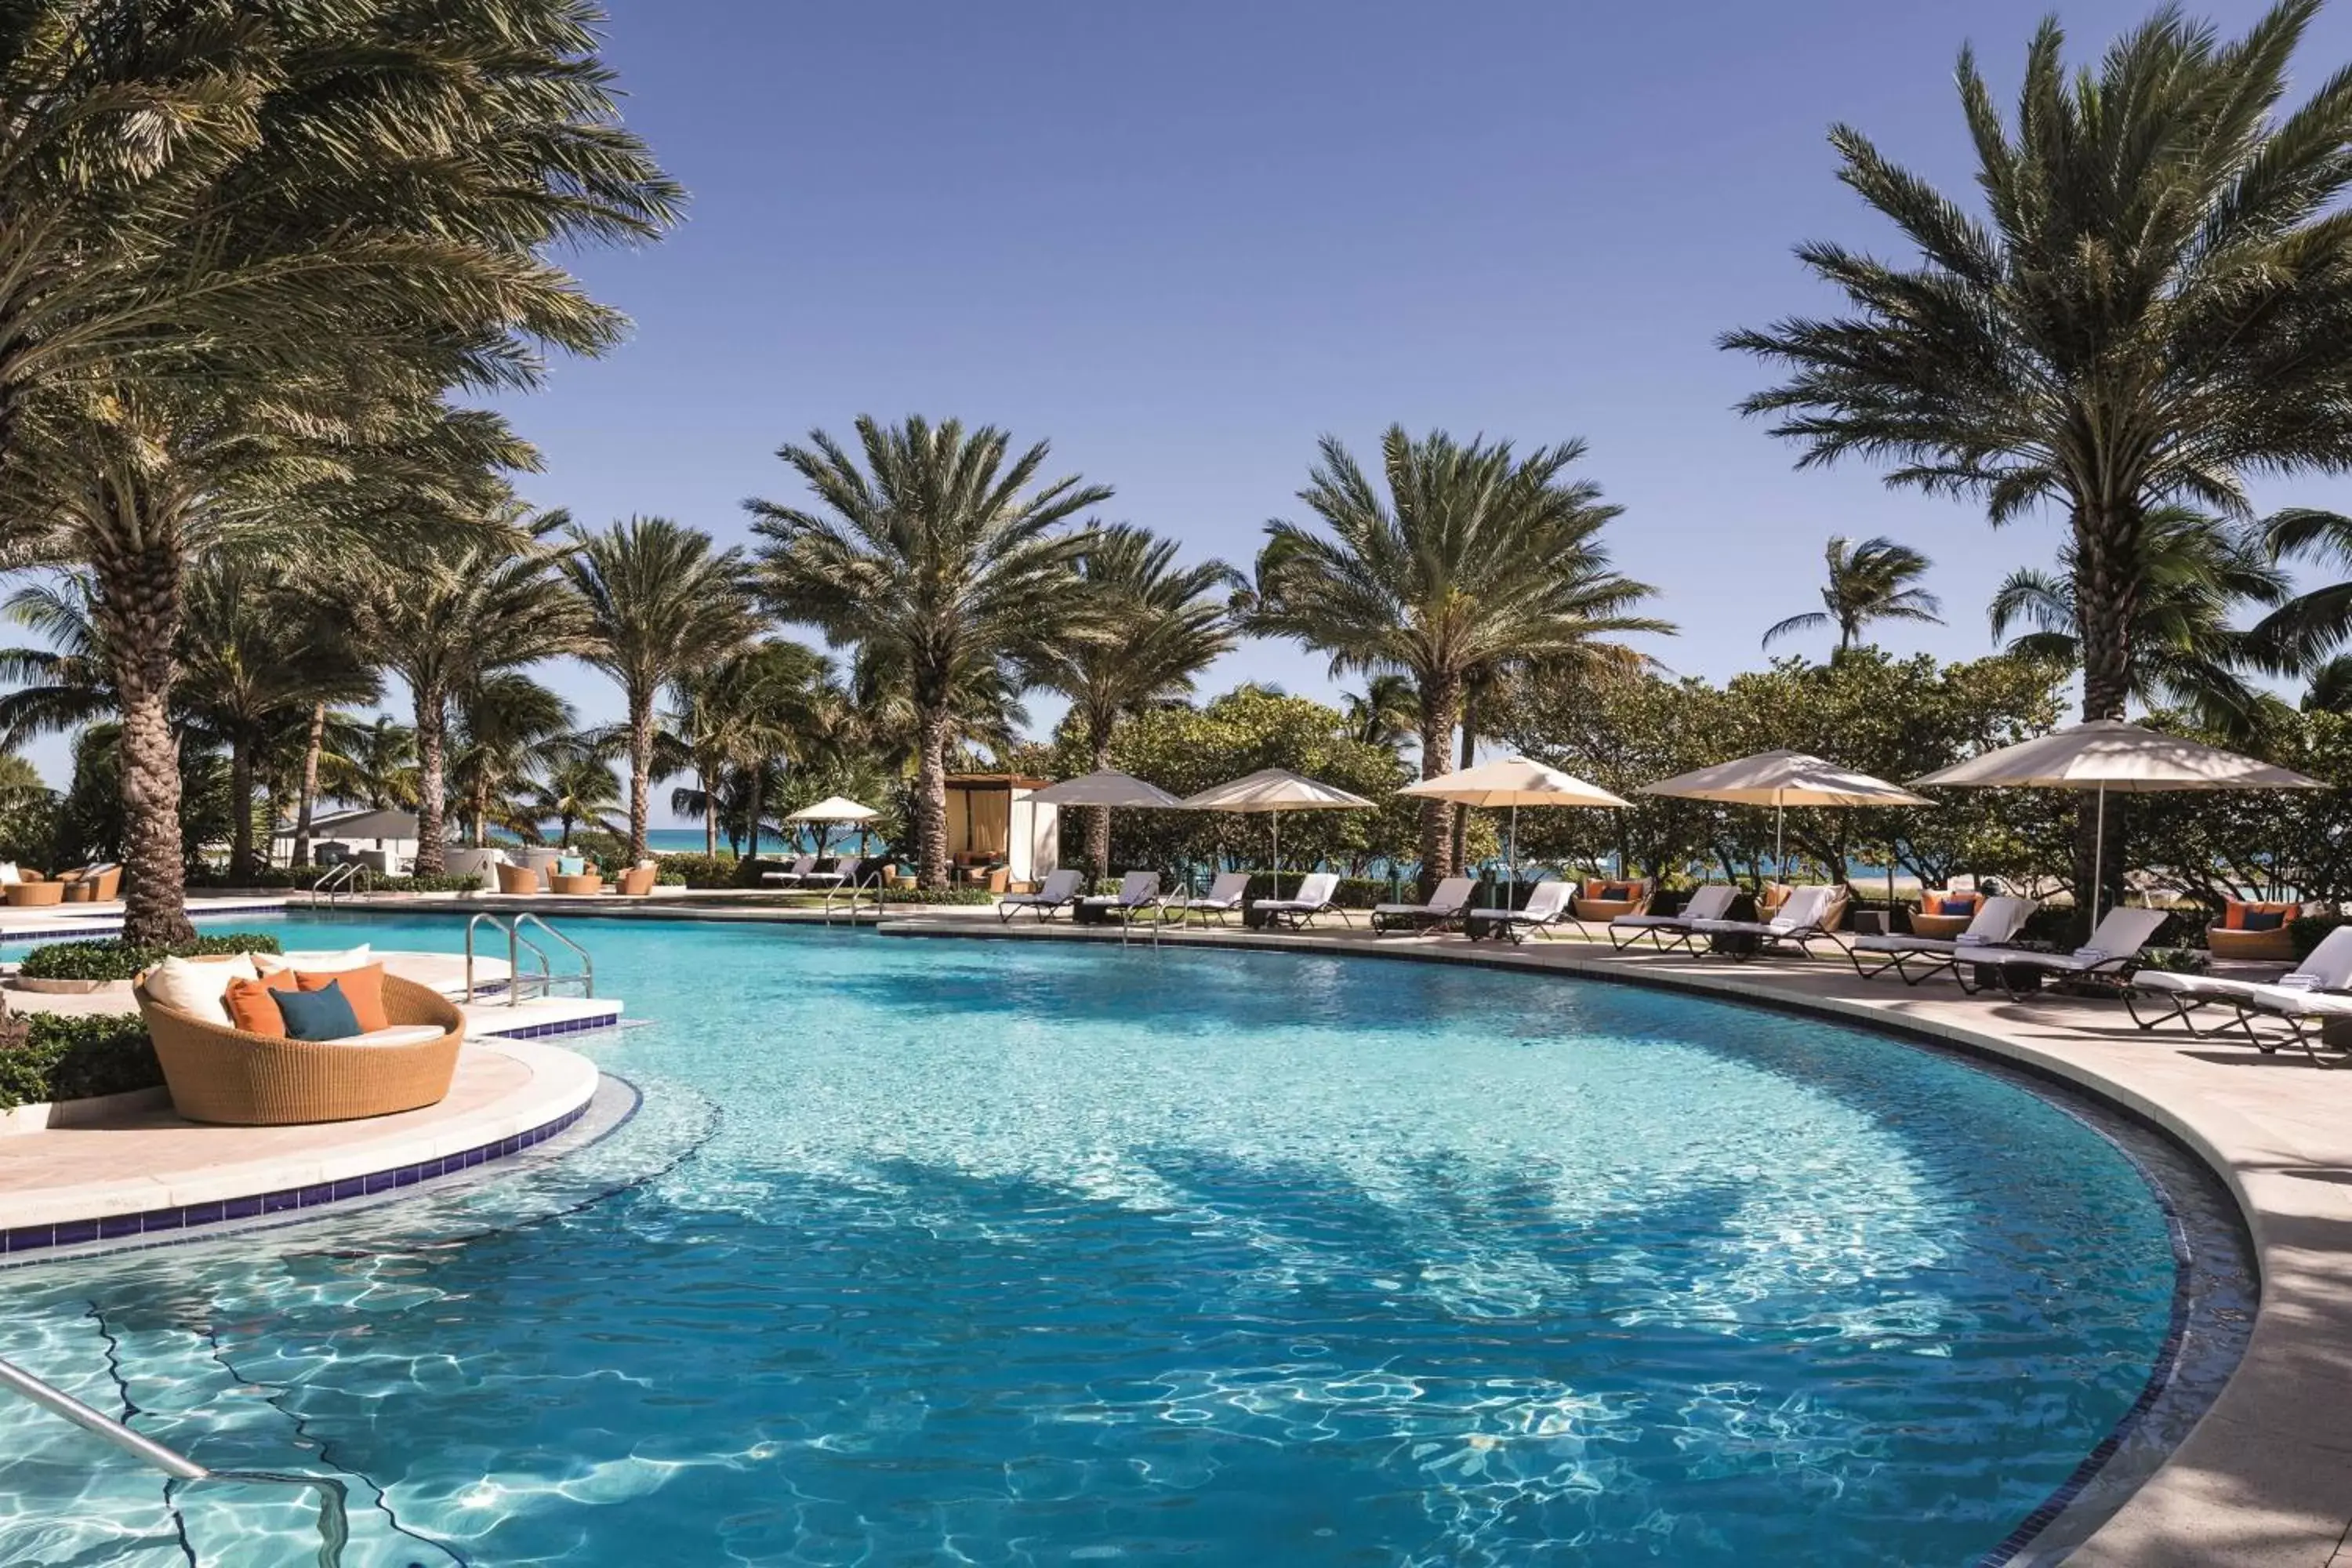 Swimming Pool in The Ritz-Carlton Bal Harbour, Miami